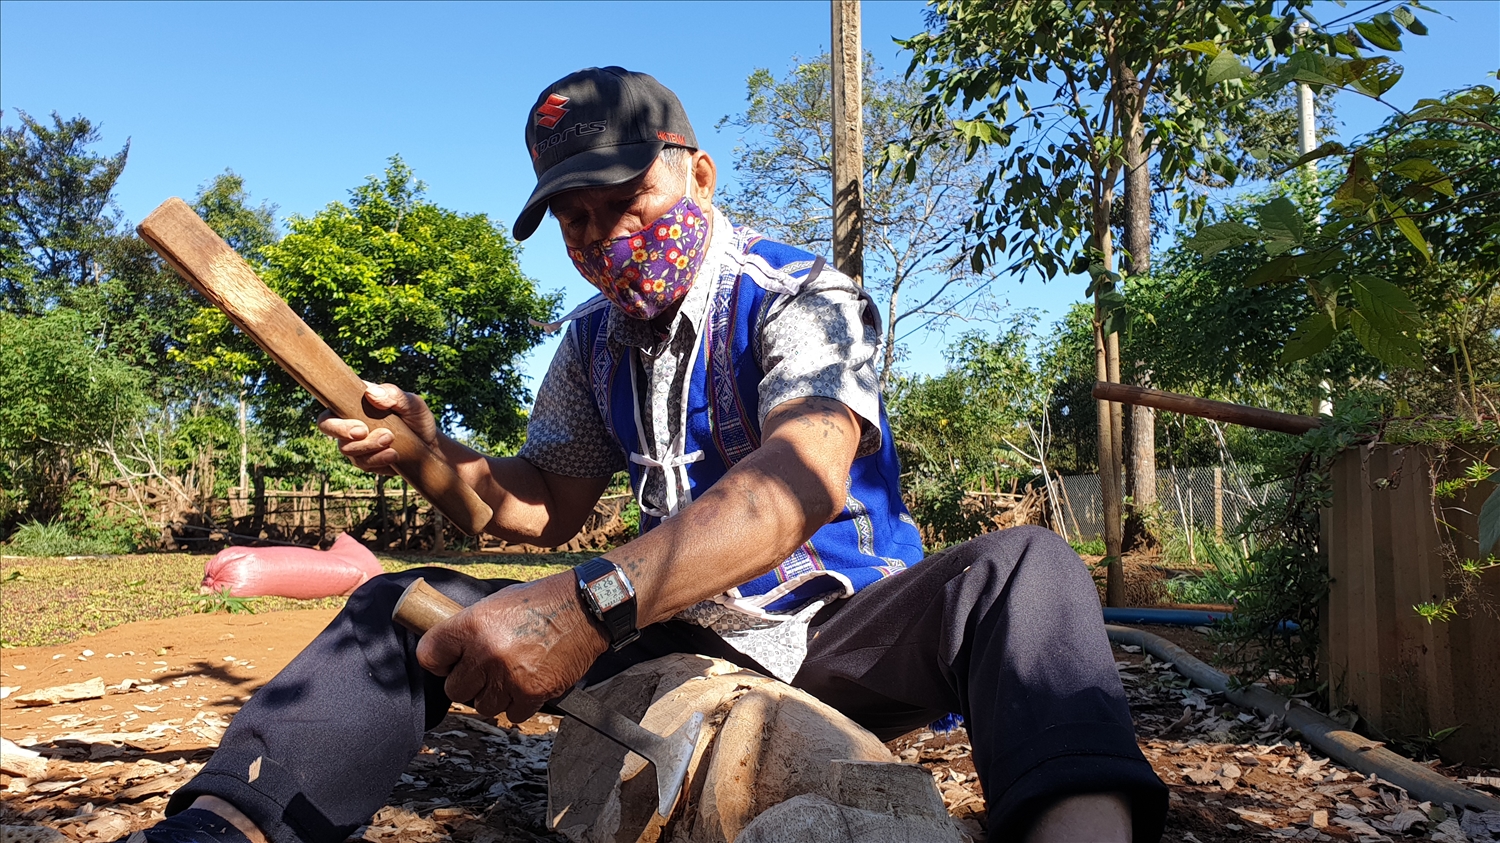 Nghệ nhân Ưu tú Ksoh Krôh (xã Ia Ka, huyện Chư Păh) hiện nay là bậc thầy trong nghề tạc tượng tại địa phương